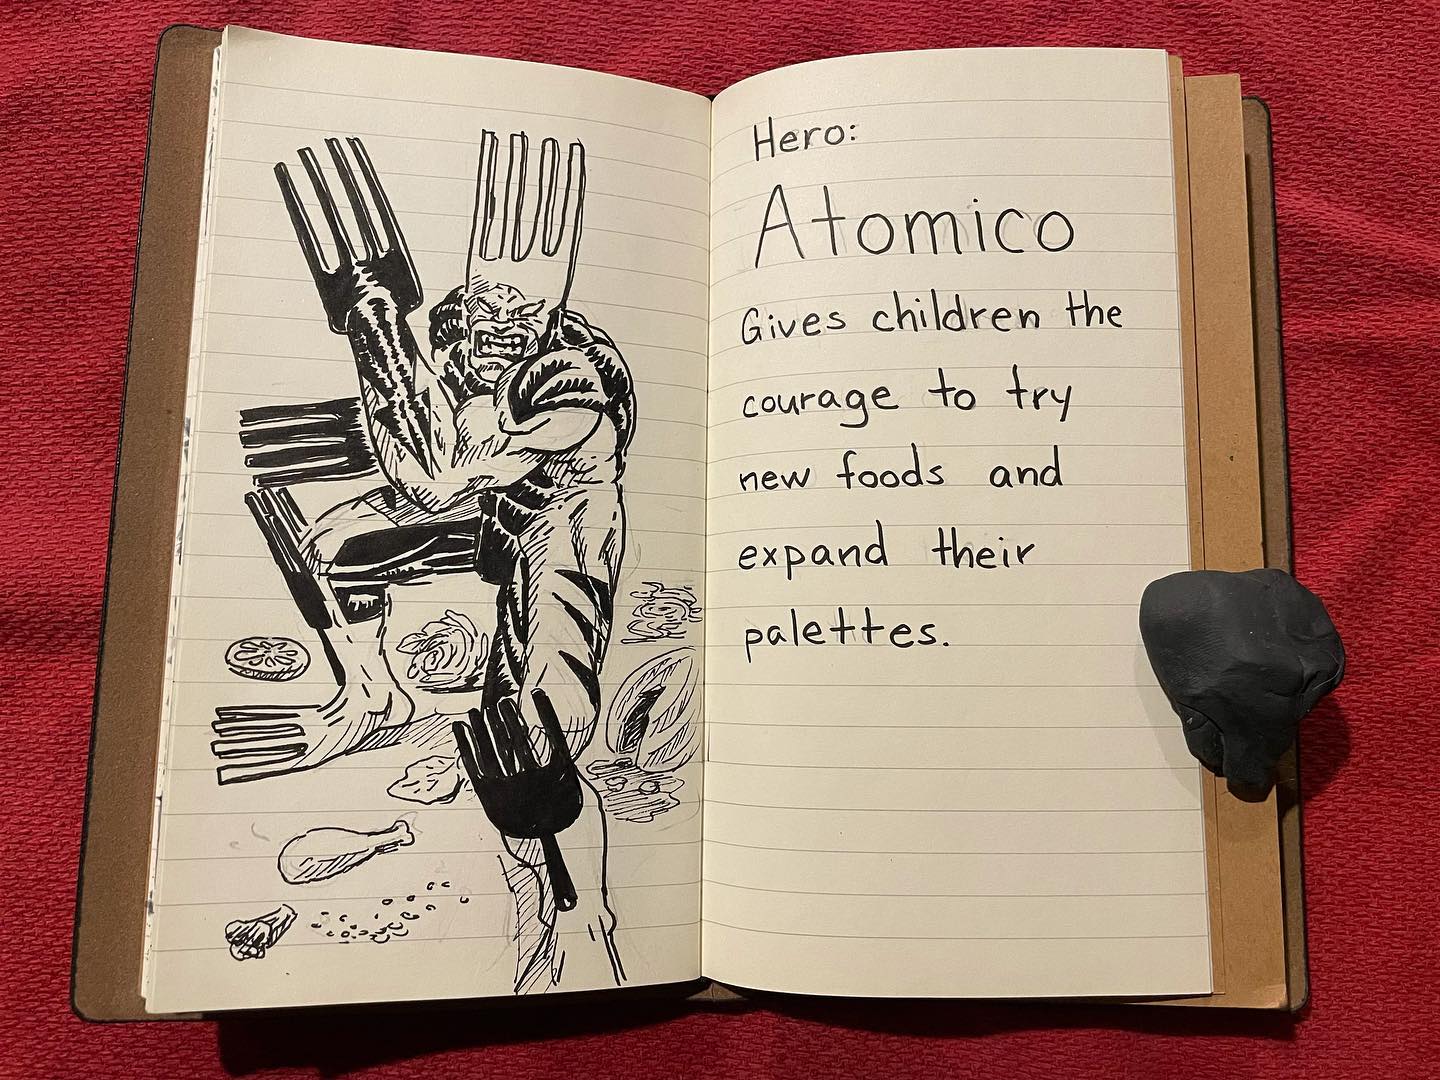 Hero: Atomico